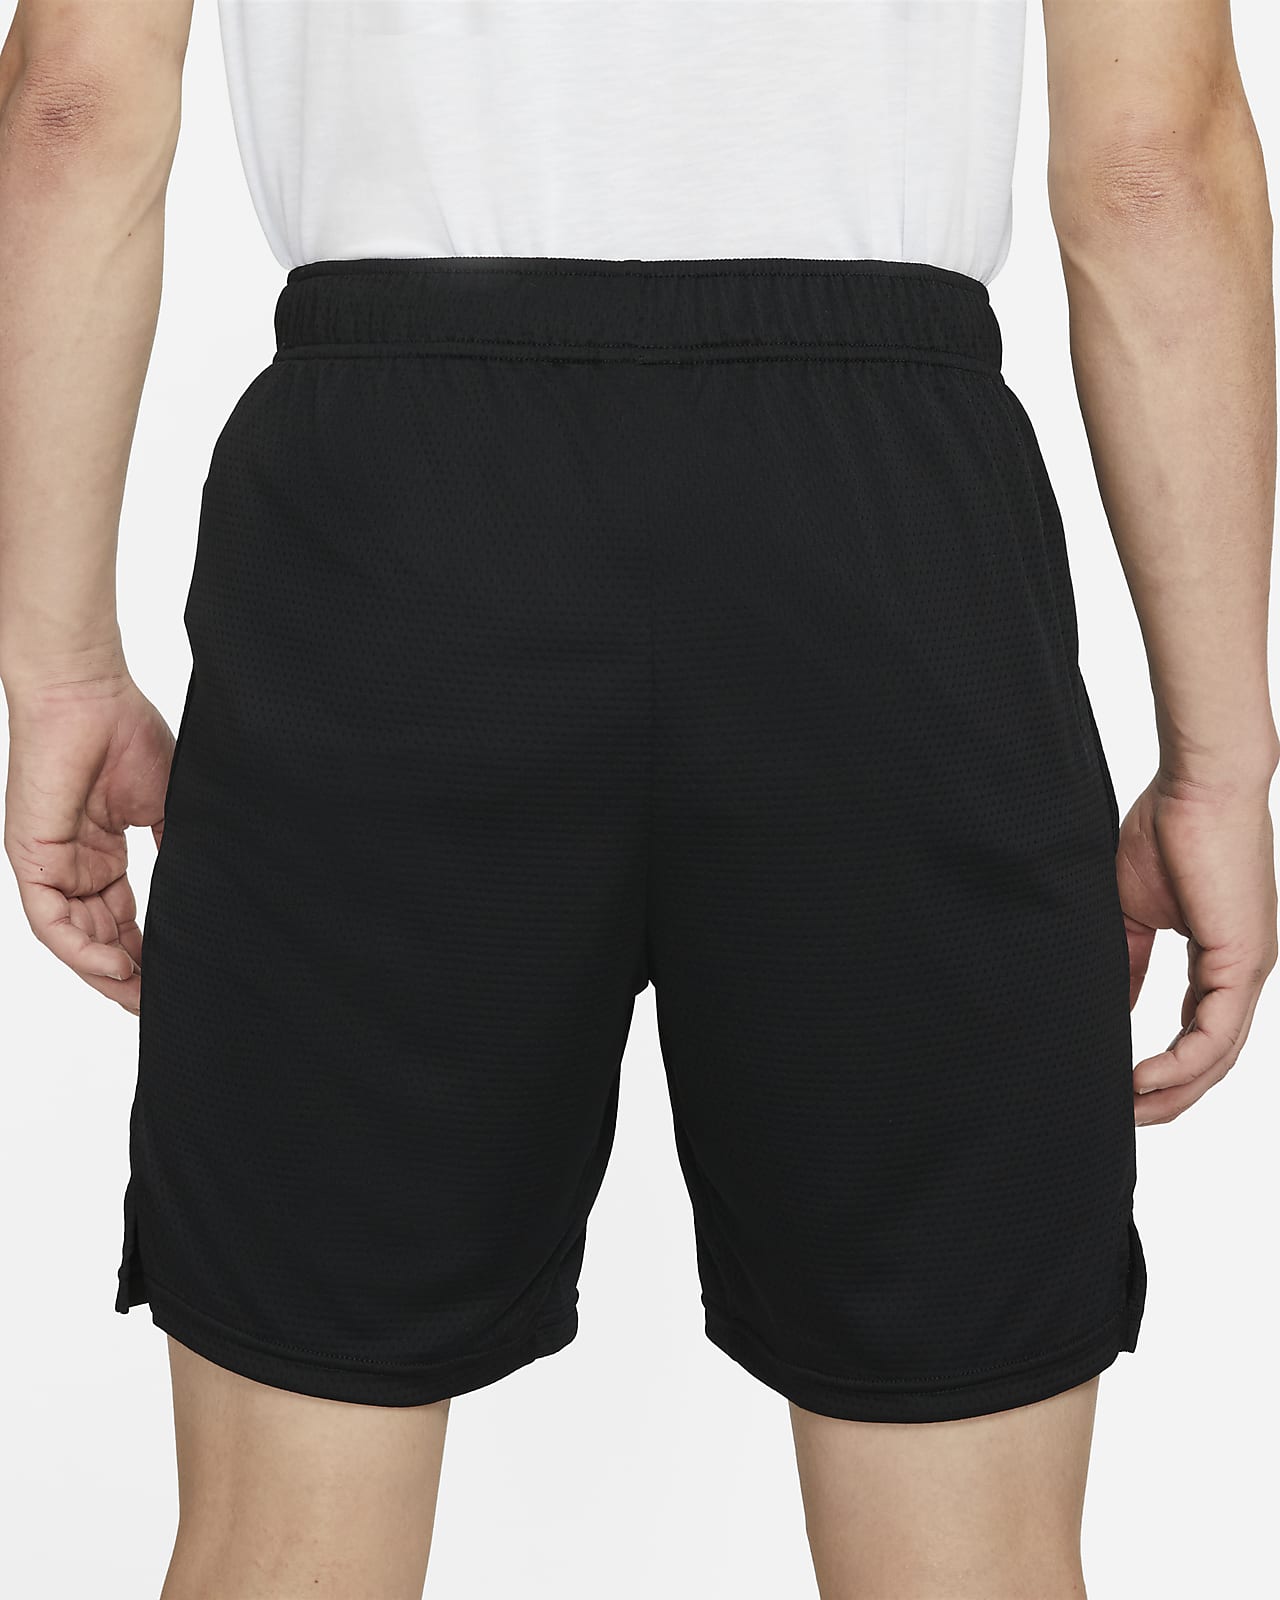 nike men's mesh shorts